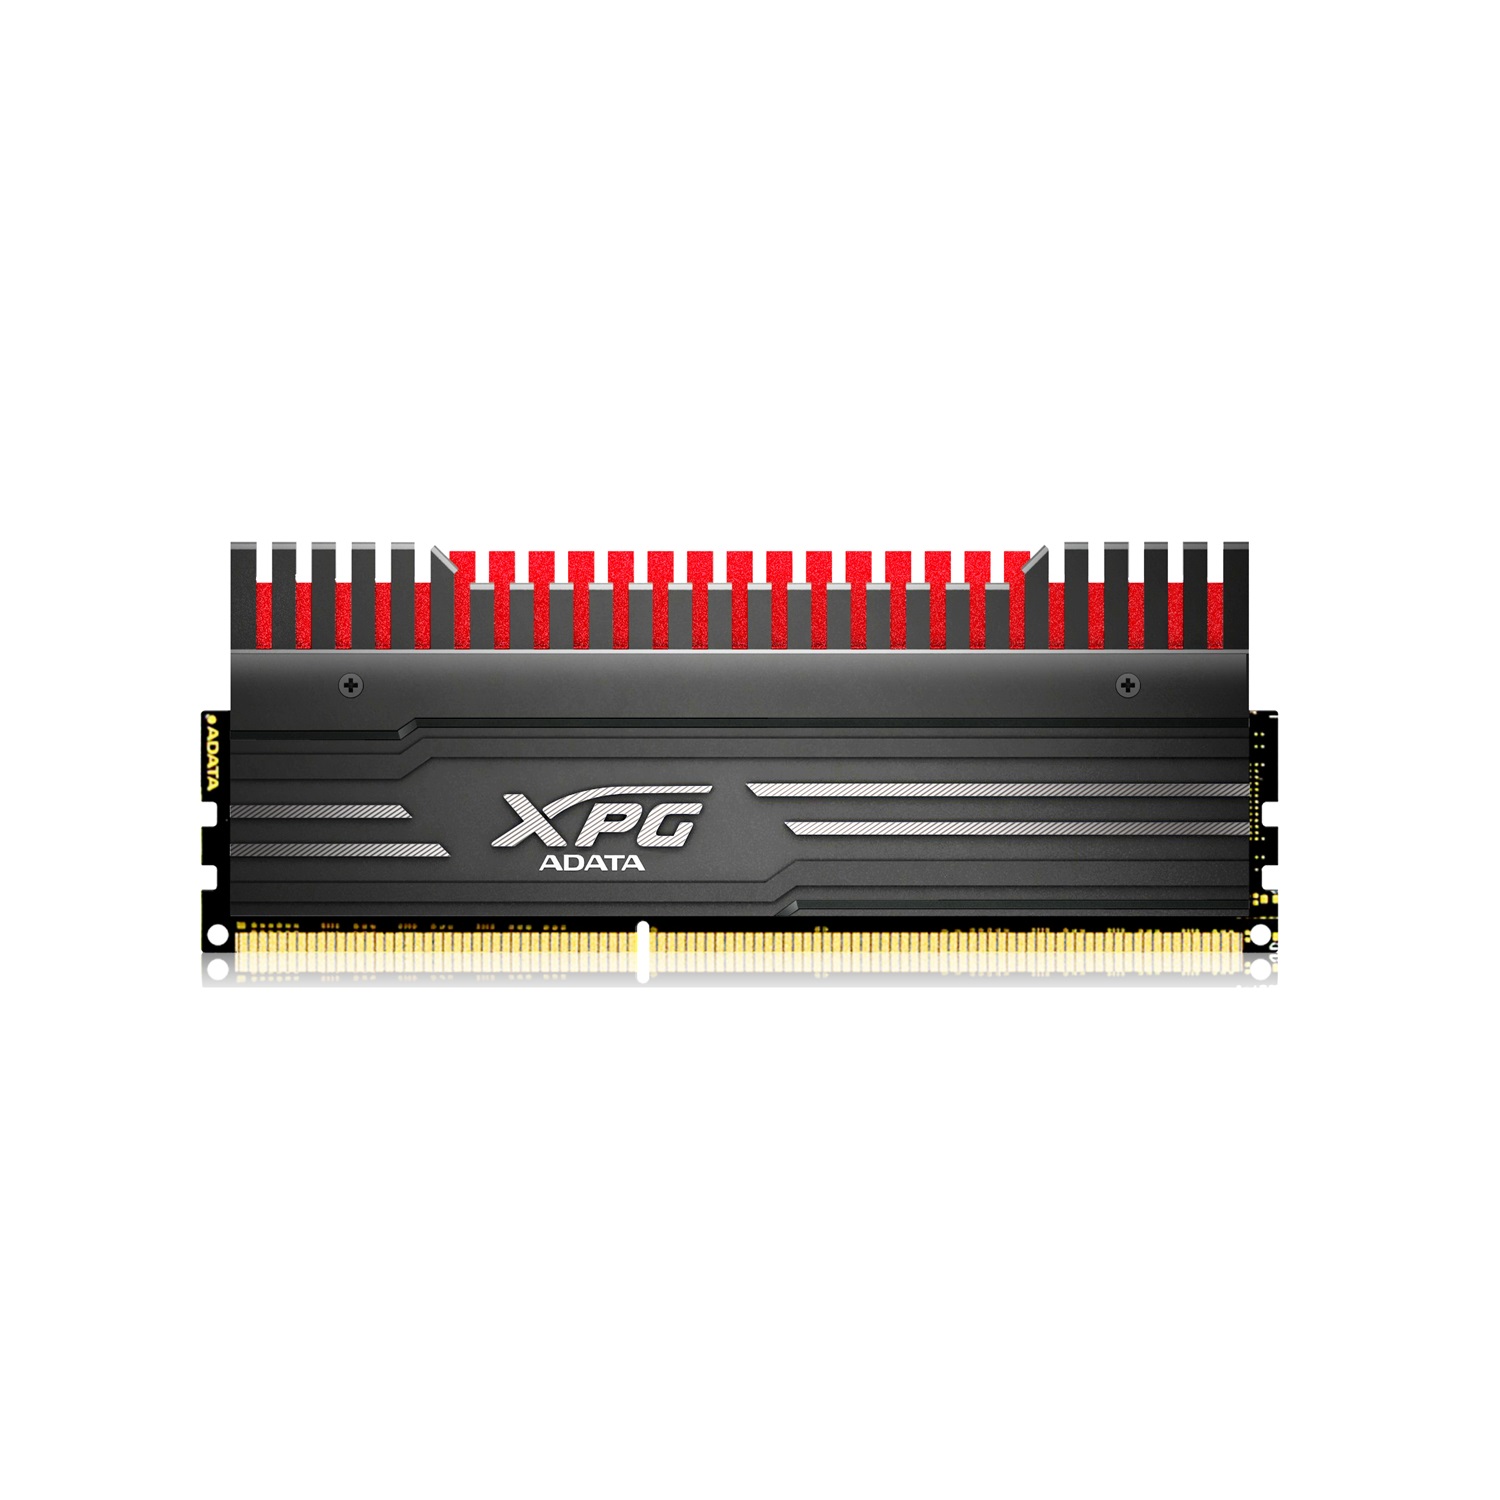 Immagine pubblicata in relazione al seguente contenuto: Overclocking: ADATA annuncia le memorie RAM XPG V3 DDR3 3100 | Nome immagine: news21448_ADATA-XPG-V3-DDR3-3100_1.jpg